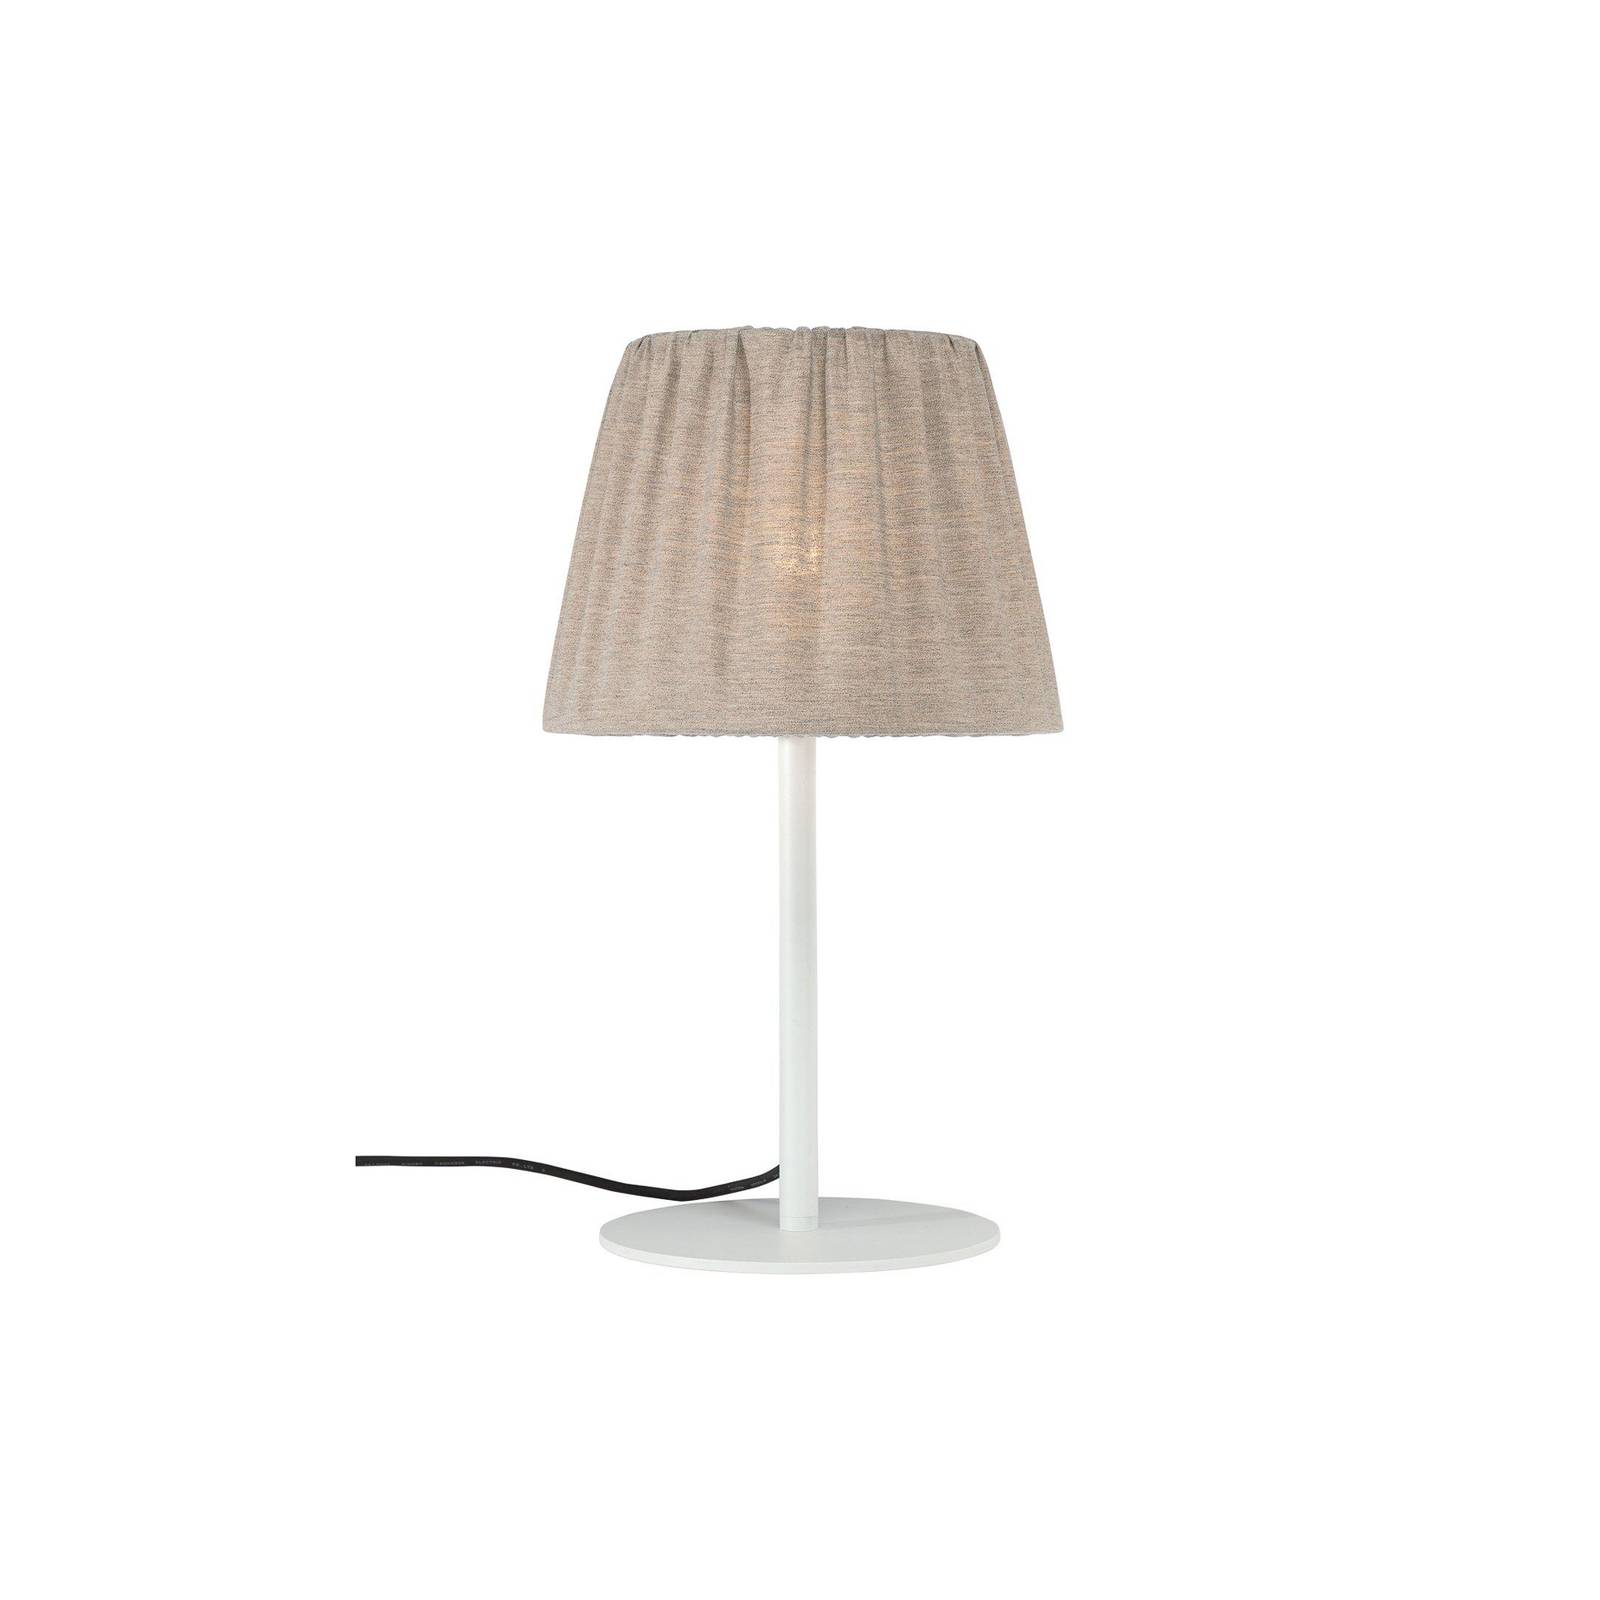 E-shop PR Home Vonkajšia stolová lampa Agnar, biela / hnedá, 57 cm